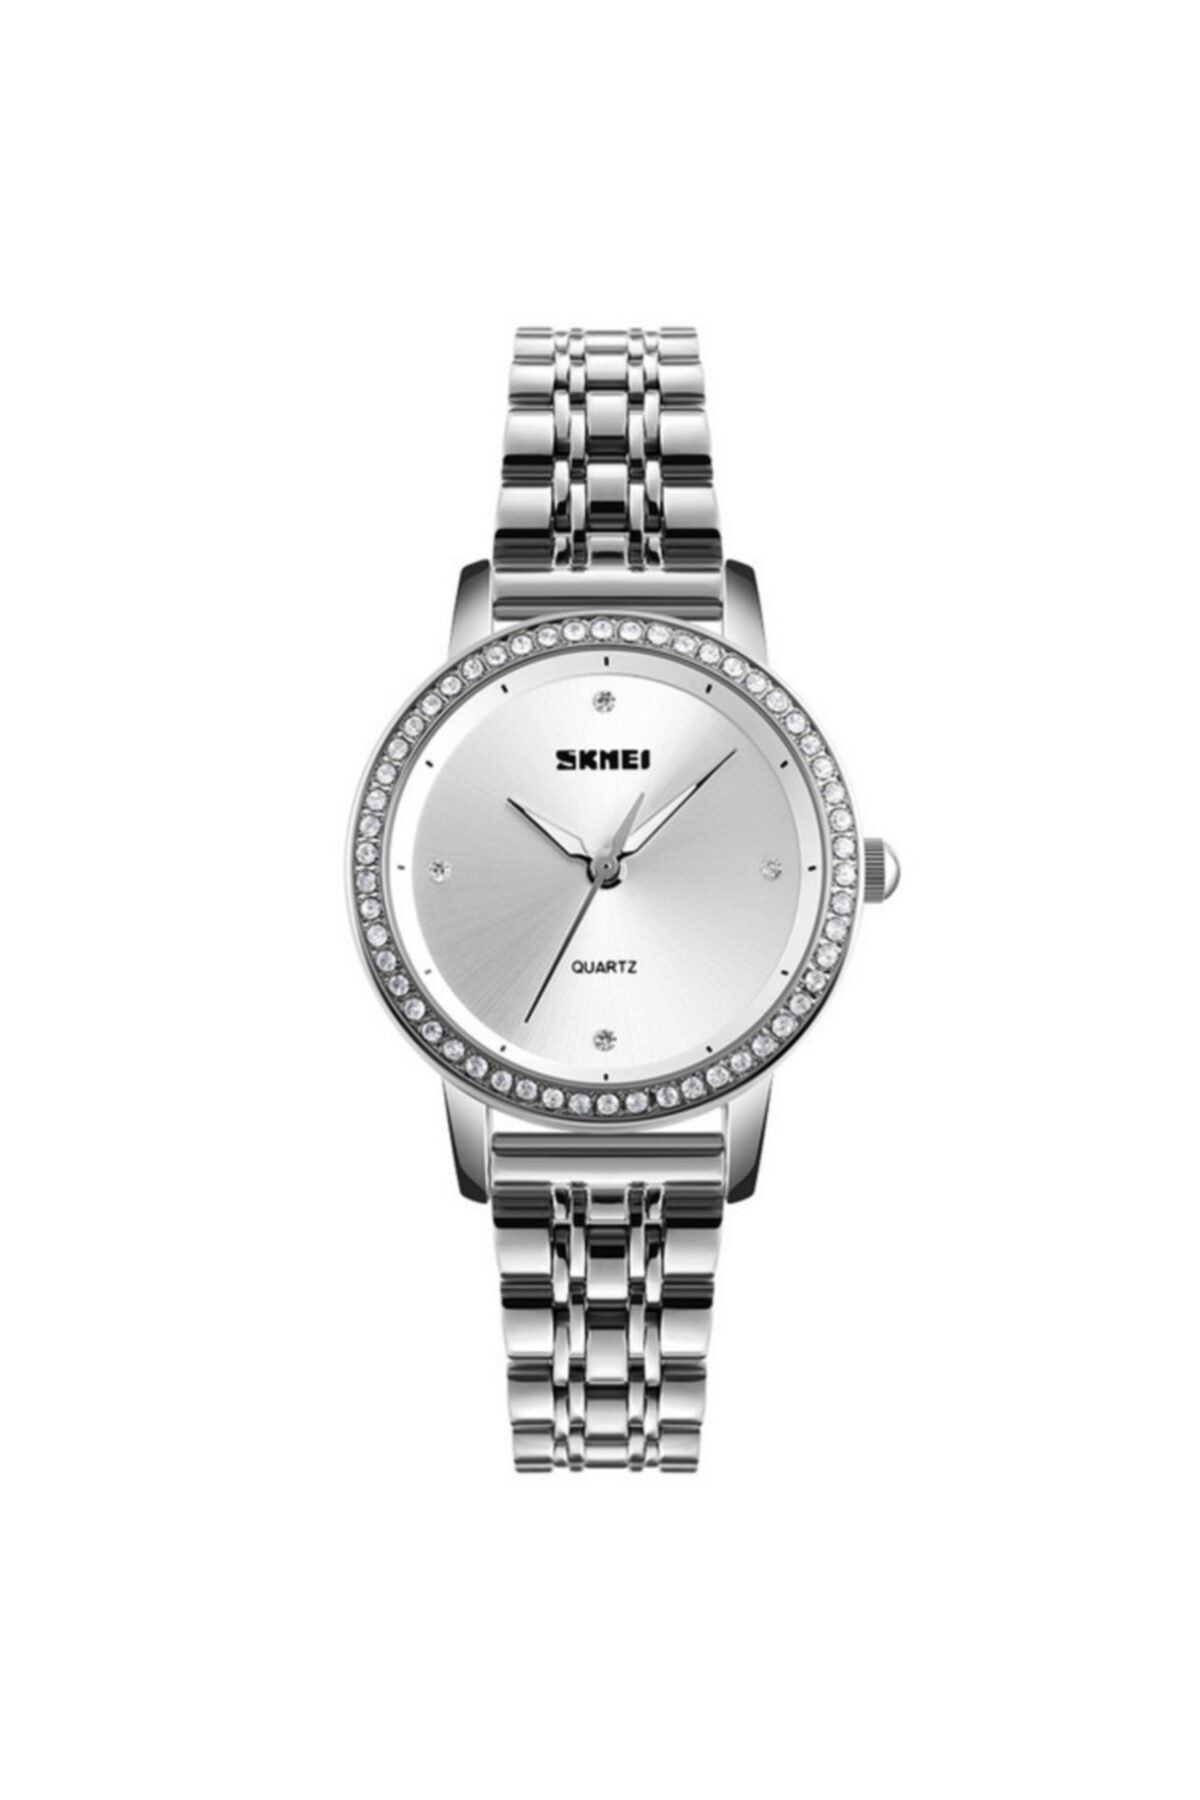 Skmei Yeni Kadın Kol Saati Şık Tasarım Gümüş Sk013110